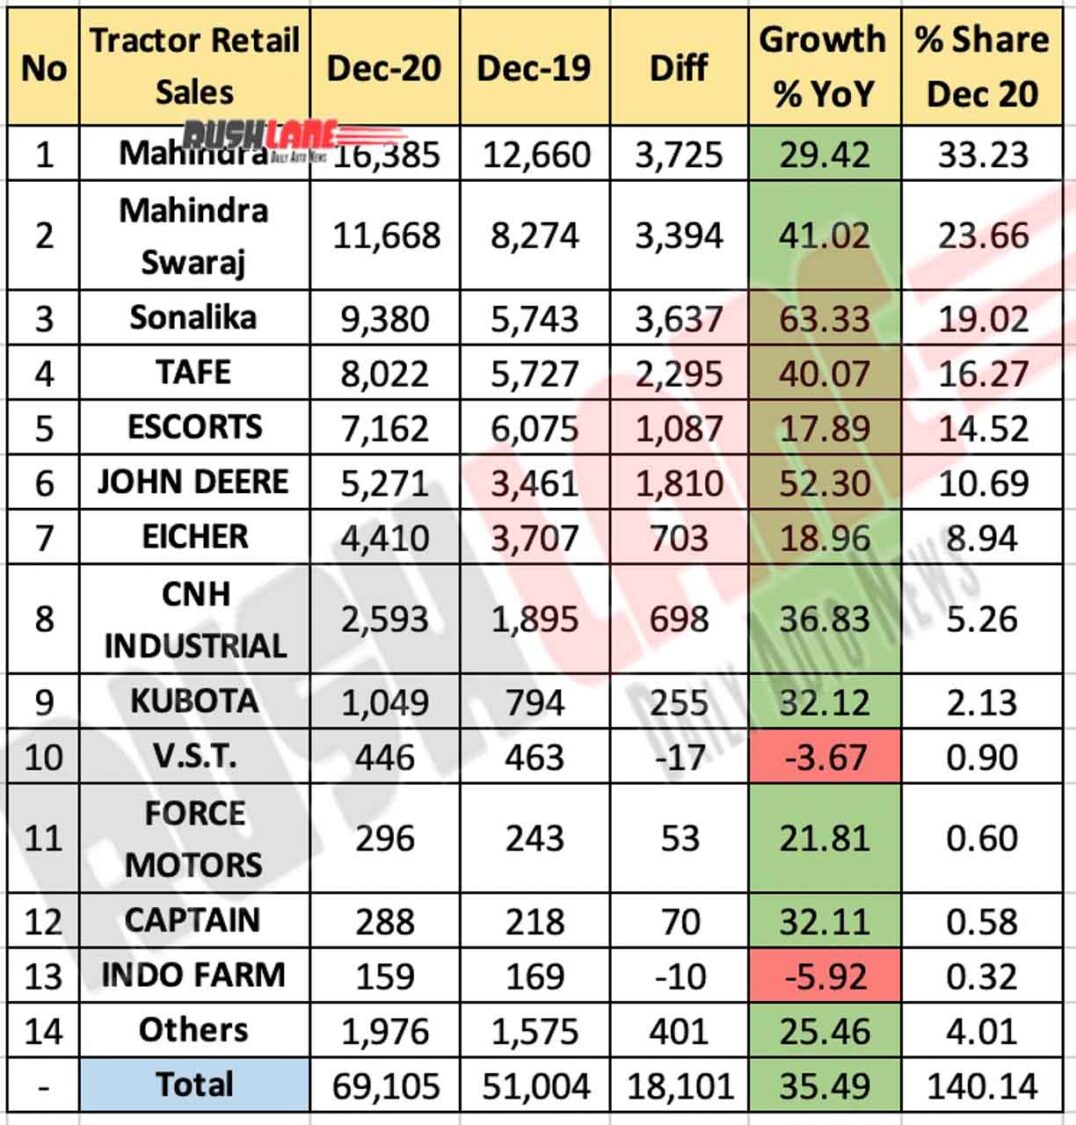 Tractor Retail Sales Dec 2020